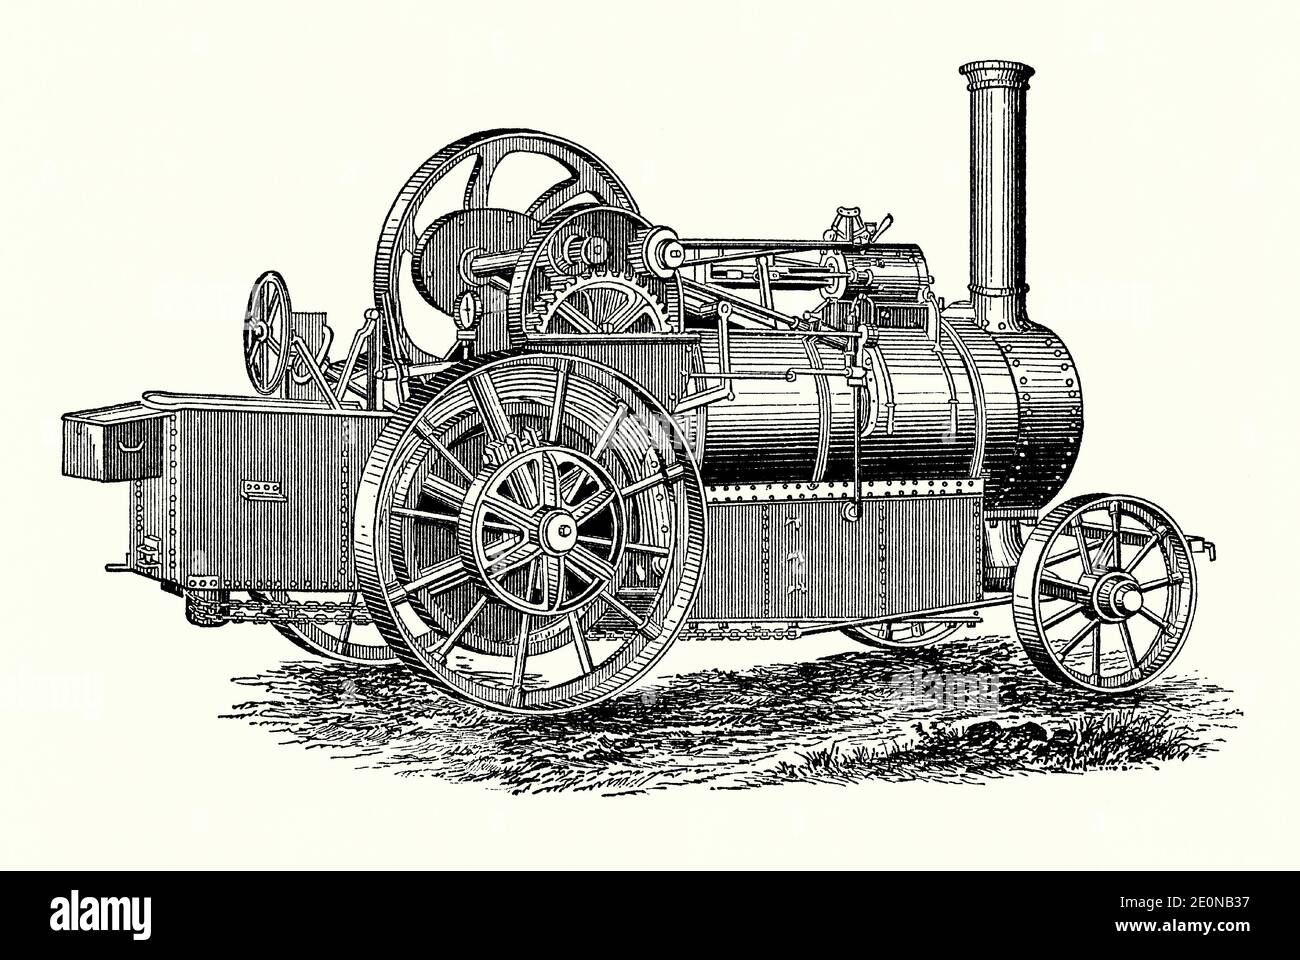 Ein alter Stich einer viktorianischen ‘Straßenlokomotive’ von Ransomes, Sims und Jefferies aus Ipswich, Suffolk, England, UK. Es ist aus einem Maschinenbaubuch der 1880er Jahre. Dieser „selbstfahrende Motor“ ‘seine leichte Version, da Straßenlokomotiven für den Schwertransport auf öffentlichen Straßen konzipiert wurden. Sie waren in der Regel größer als der normale Fahrmotor und waren mit drei-Gang-Getriebe ausgestattet. Sie wurden auch an Vorder- und Hinterachse gefedert. Unter dem Kessel wurde ein zusätzlicher Wassertank installiert, so dass größere Entfernungen zurückgelegt werden konnten. Sie konnten Lasten von bis zu 120 Tonnen ziehen. Stockfoto